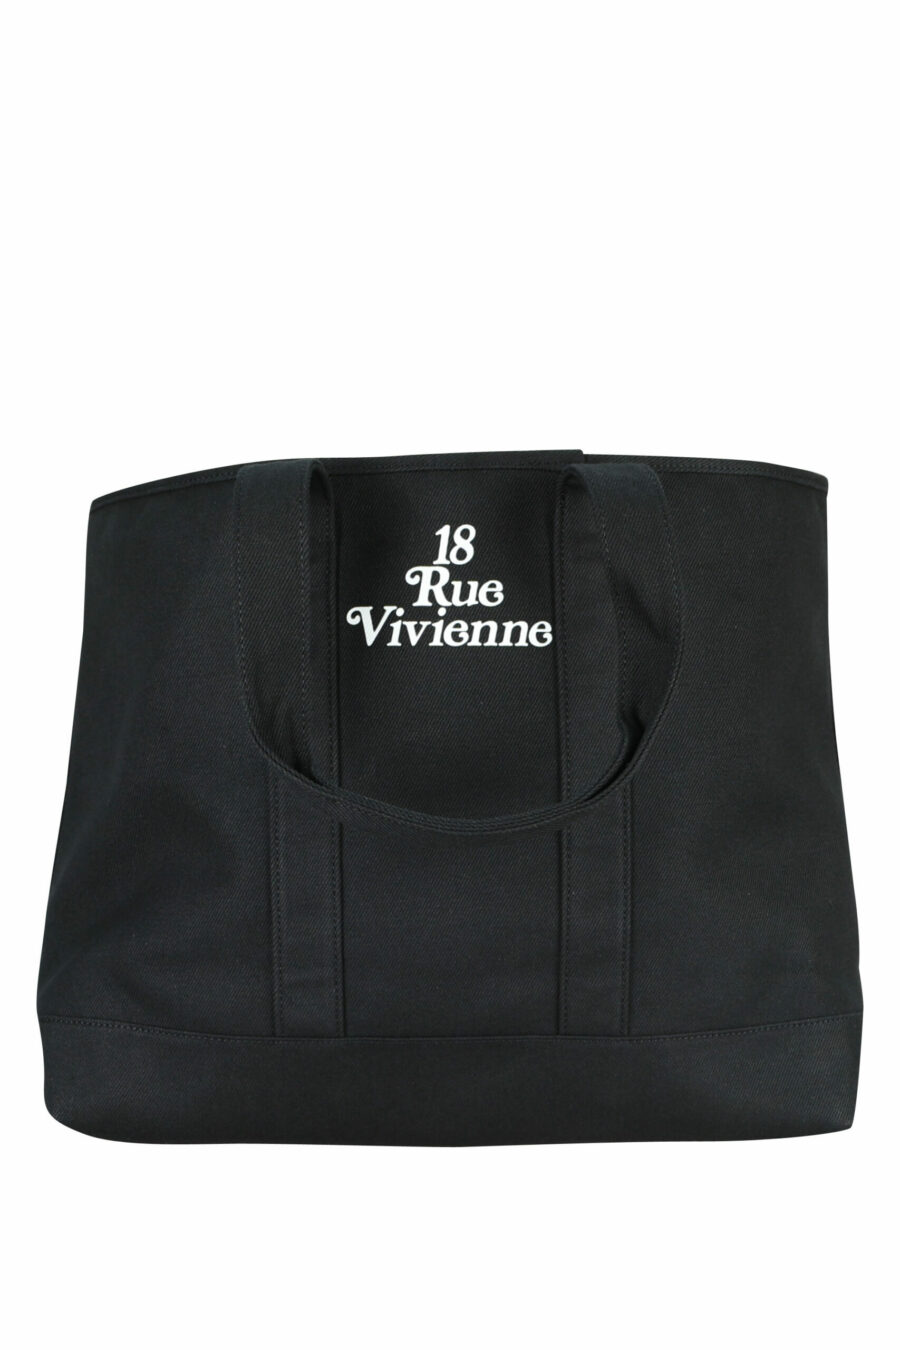 Tote bag negro con maxilogo "kenzo utility" - 3612230581388 2 scaled